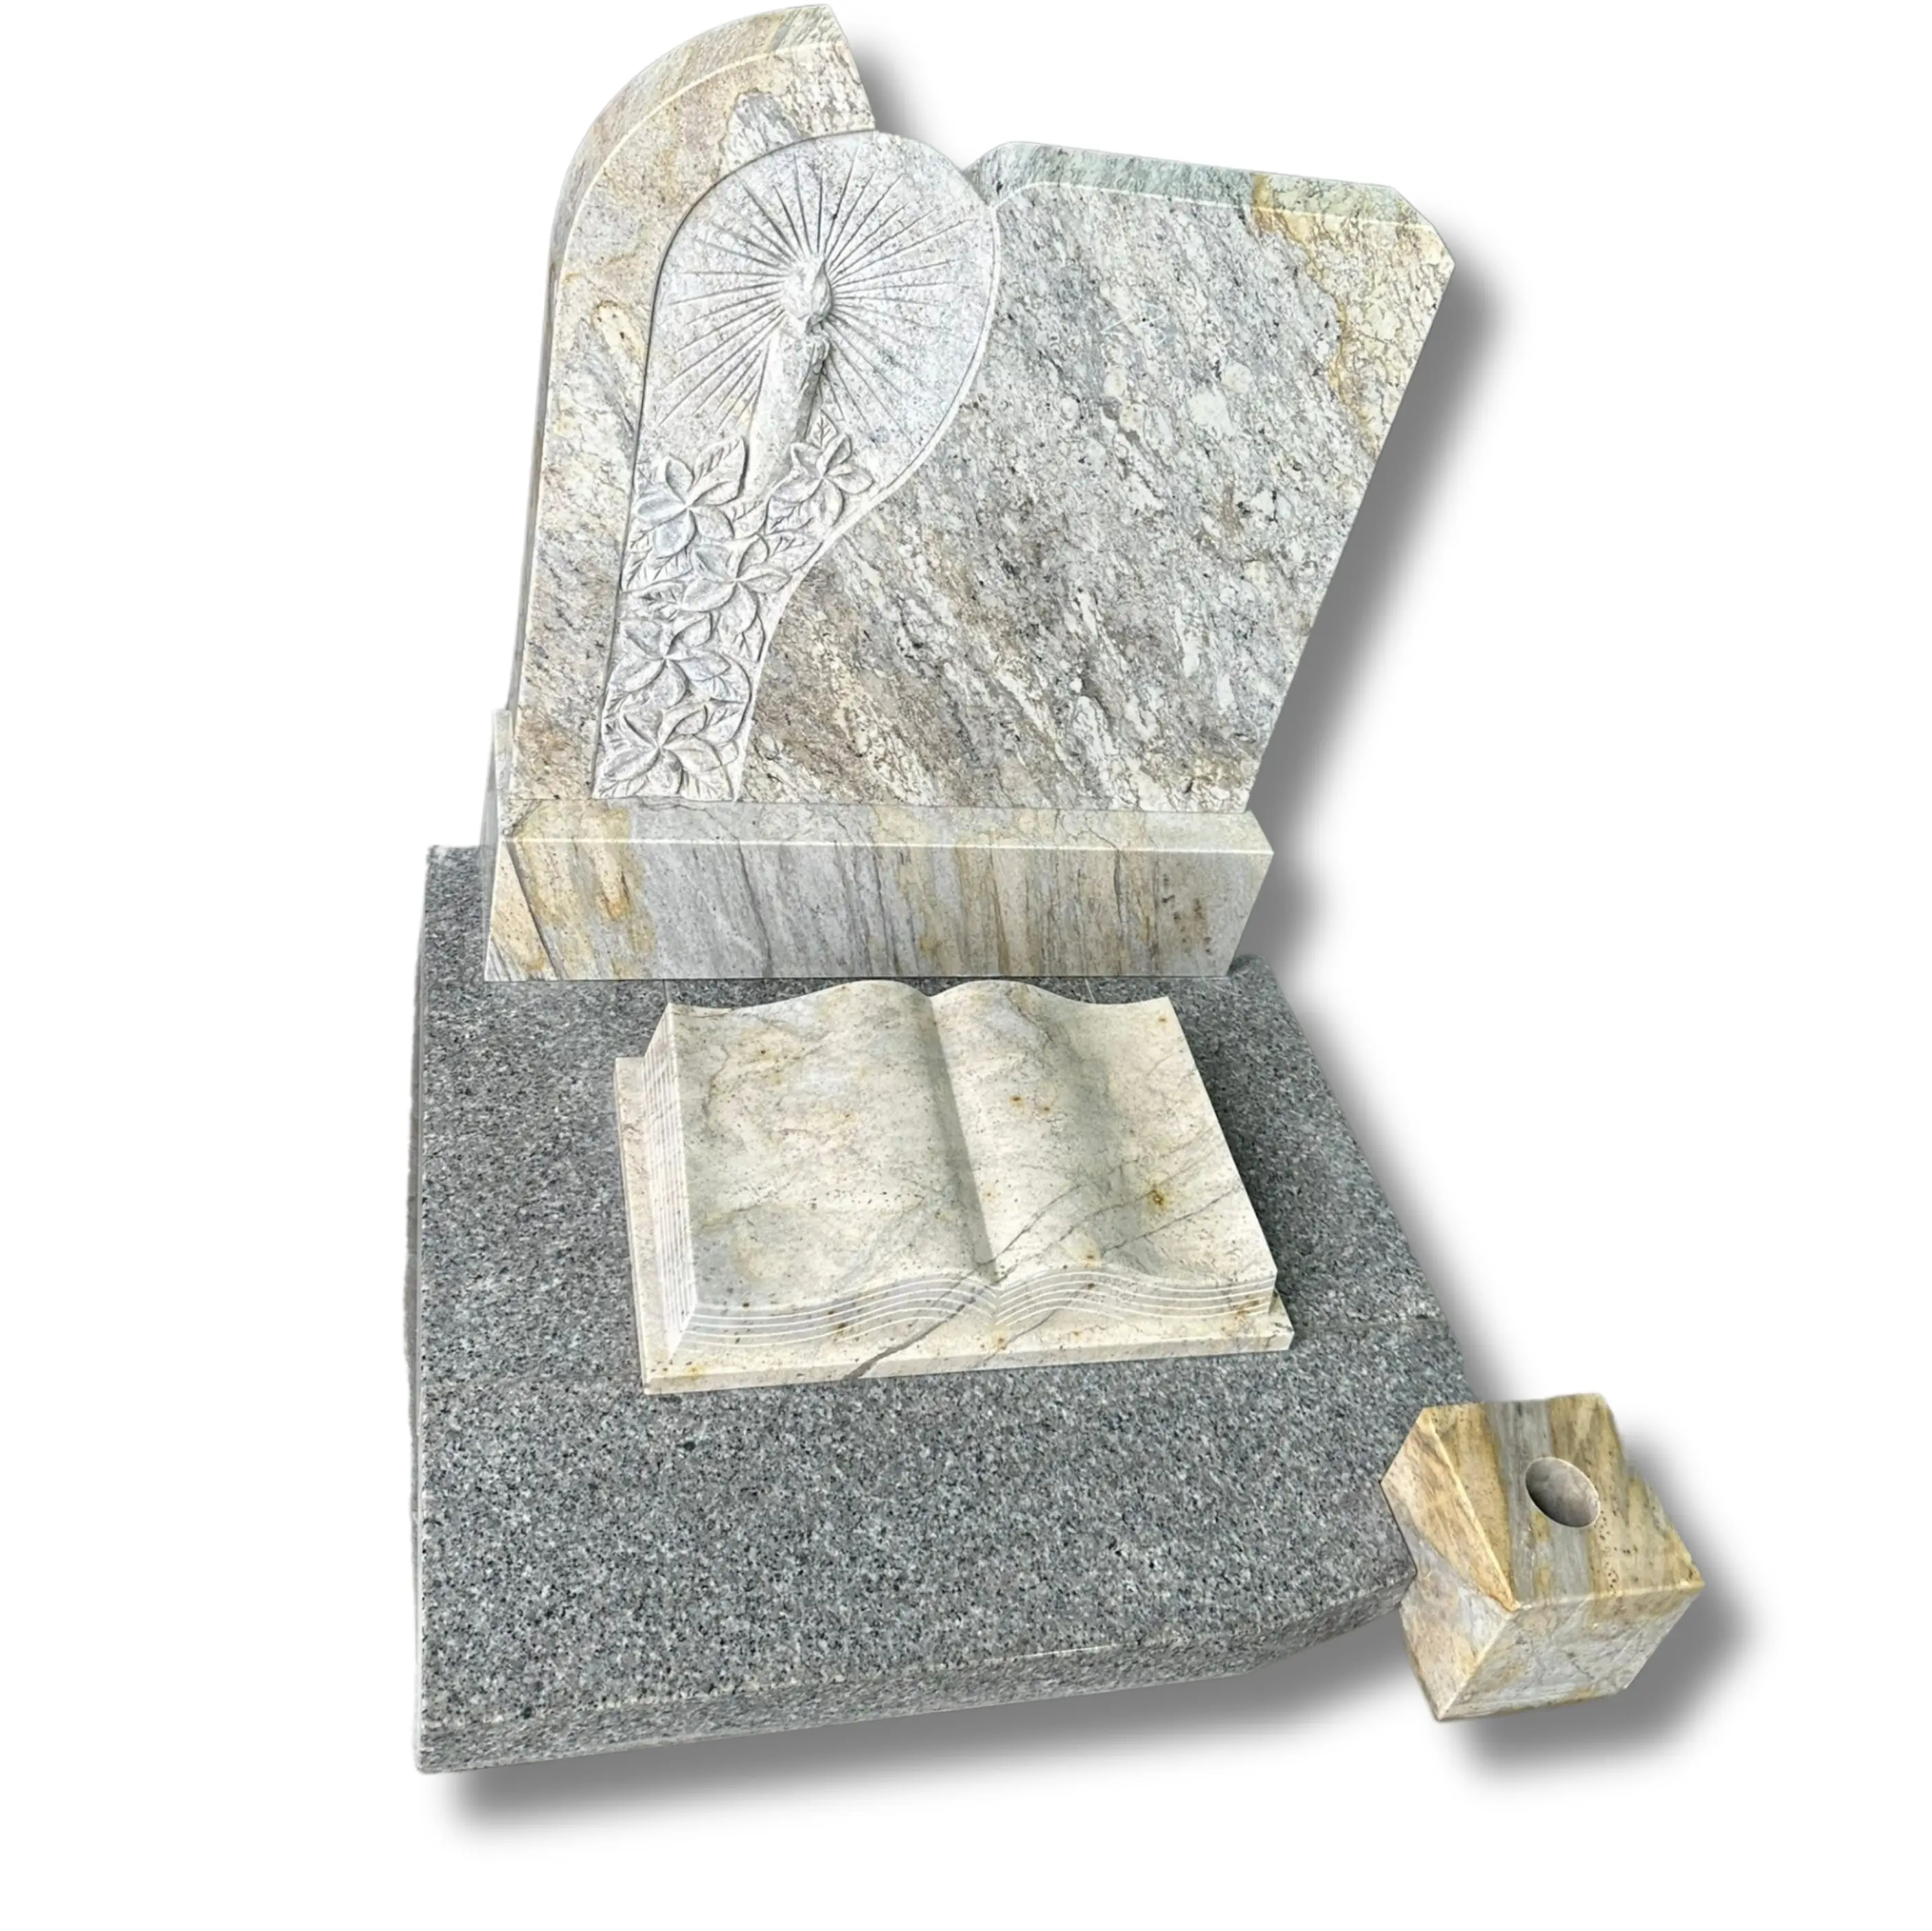 Prix bon marché pierres tombales pour tombes pierre tombale et monument cimetière grossistes tombes de granit à vendre, pierres tombales granit noir